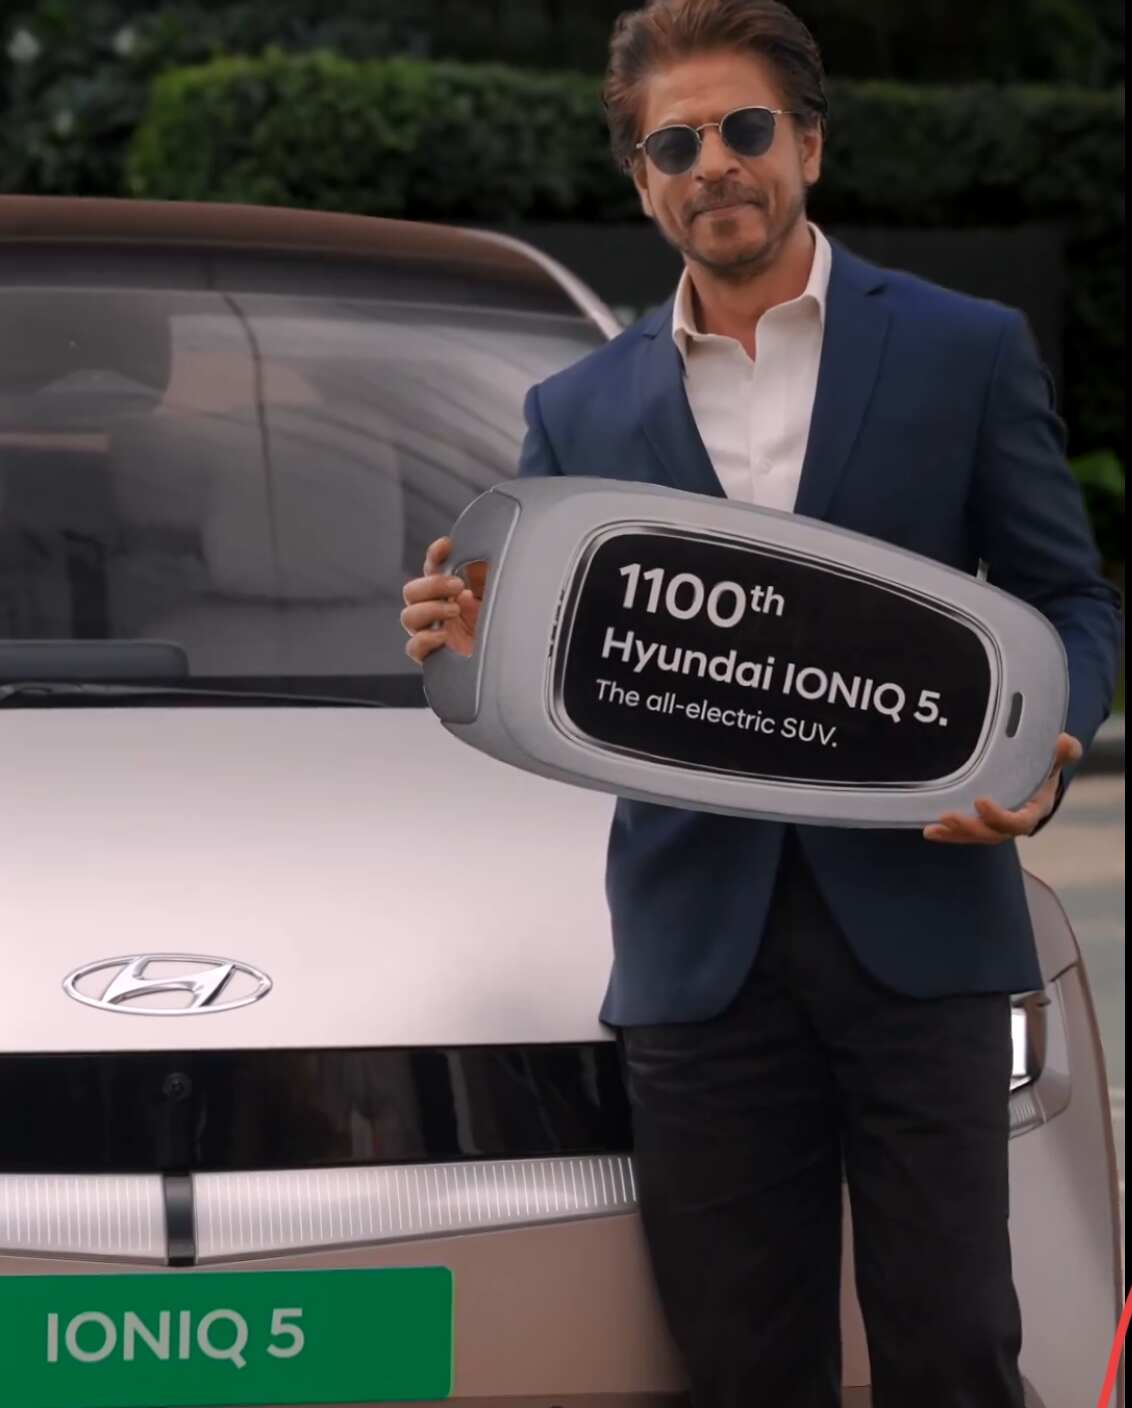 Shah Rukh Khan Receives 1100th Hyundai Ioniq 5 EV in India